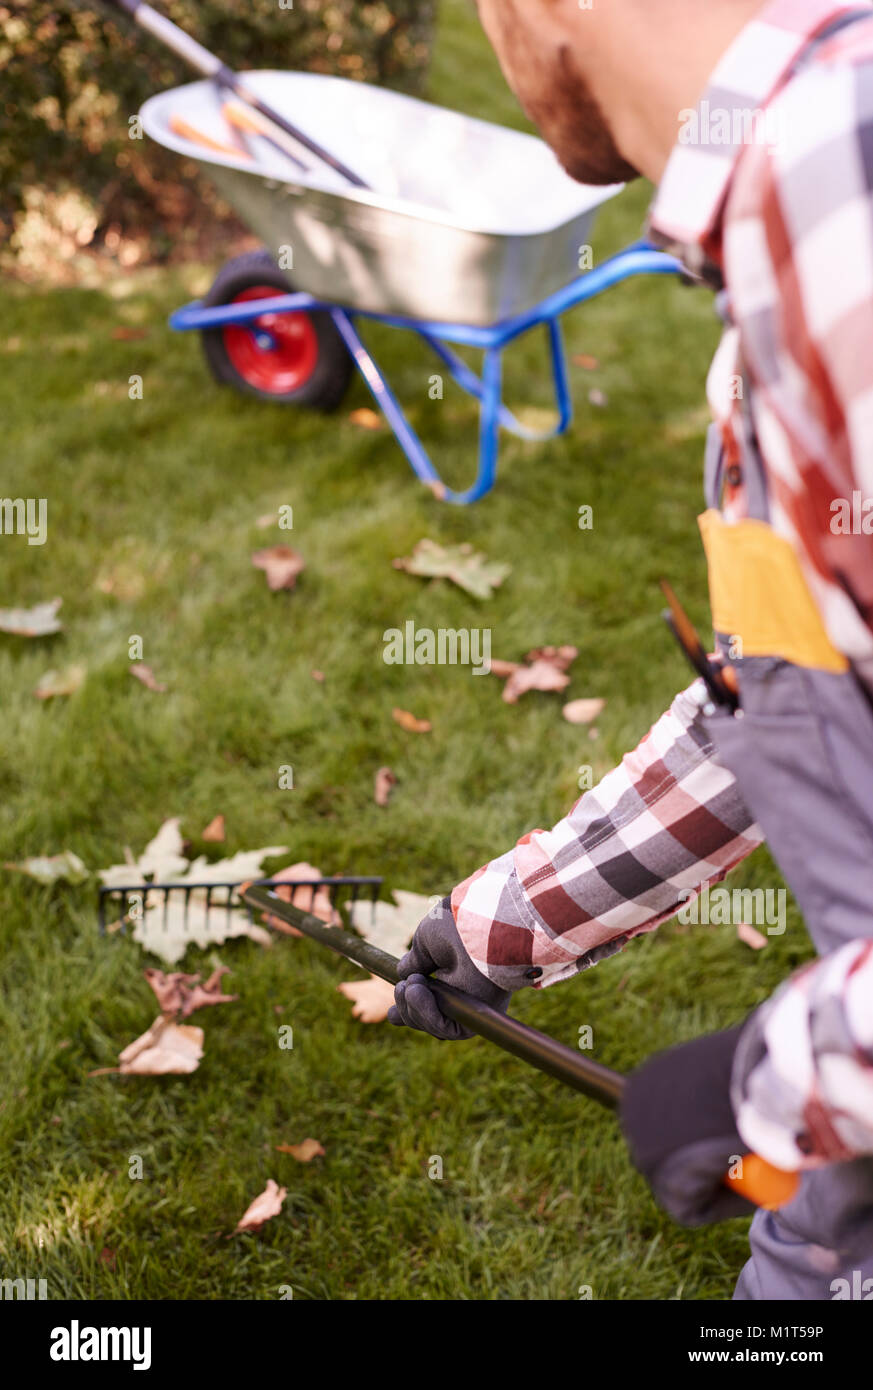 Part of man raking leaves Stock Photo